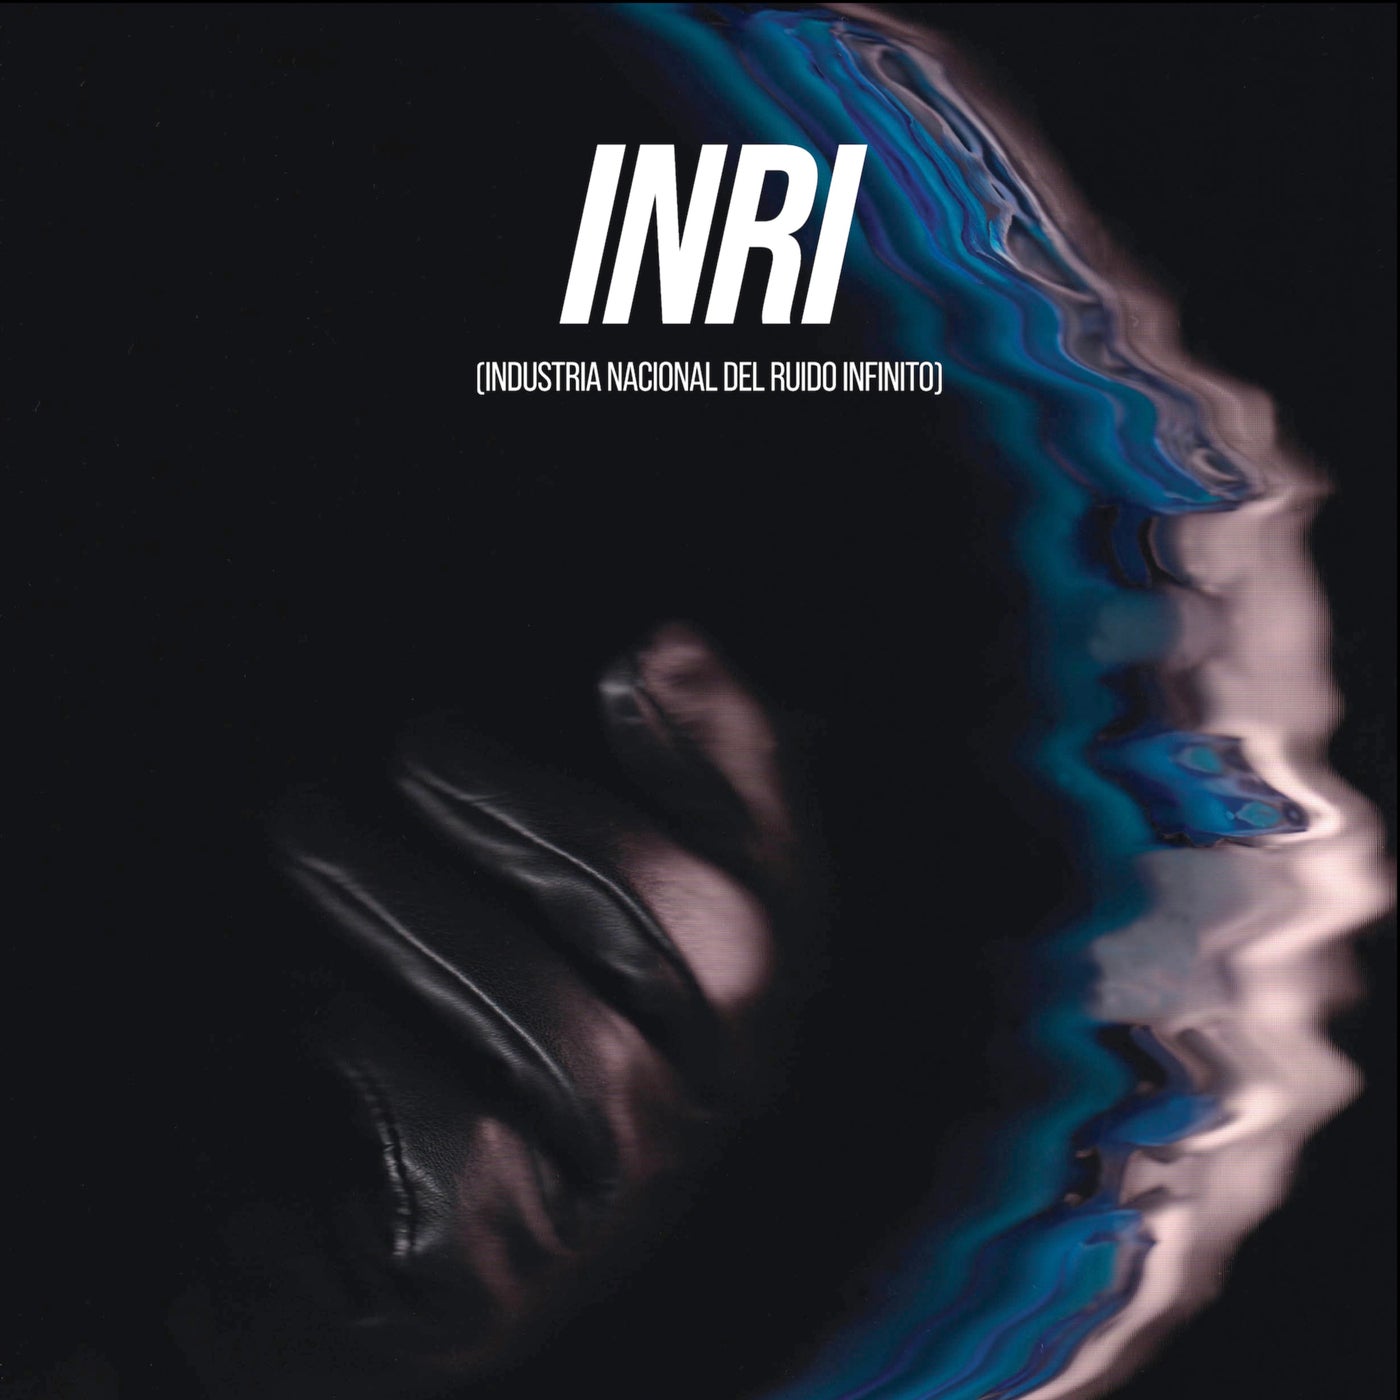 INRI (Industria Nacional del Ruido Infinito)